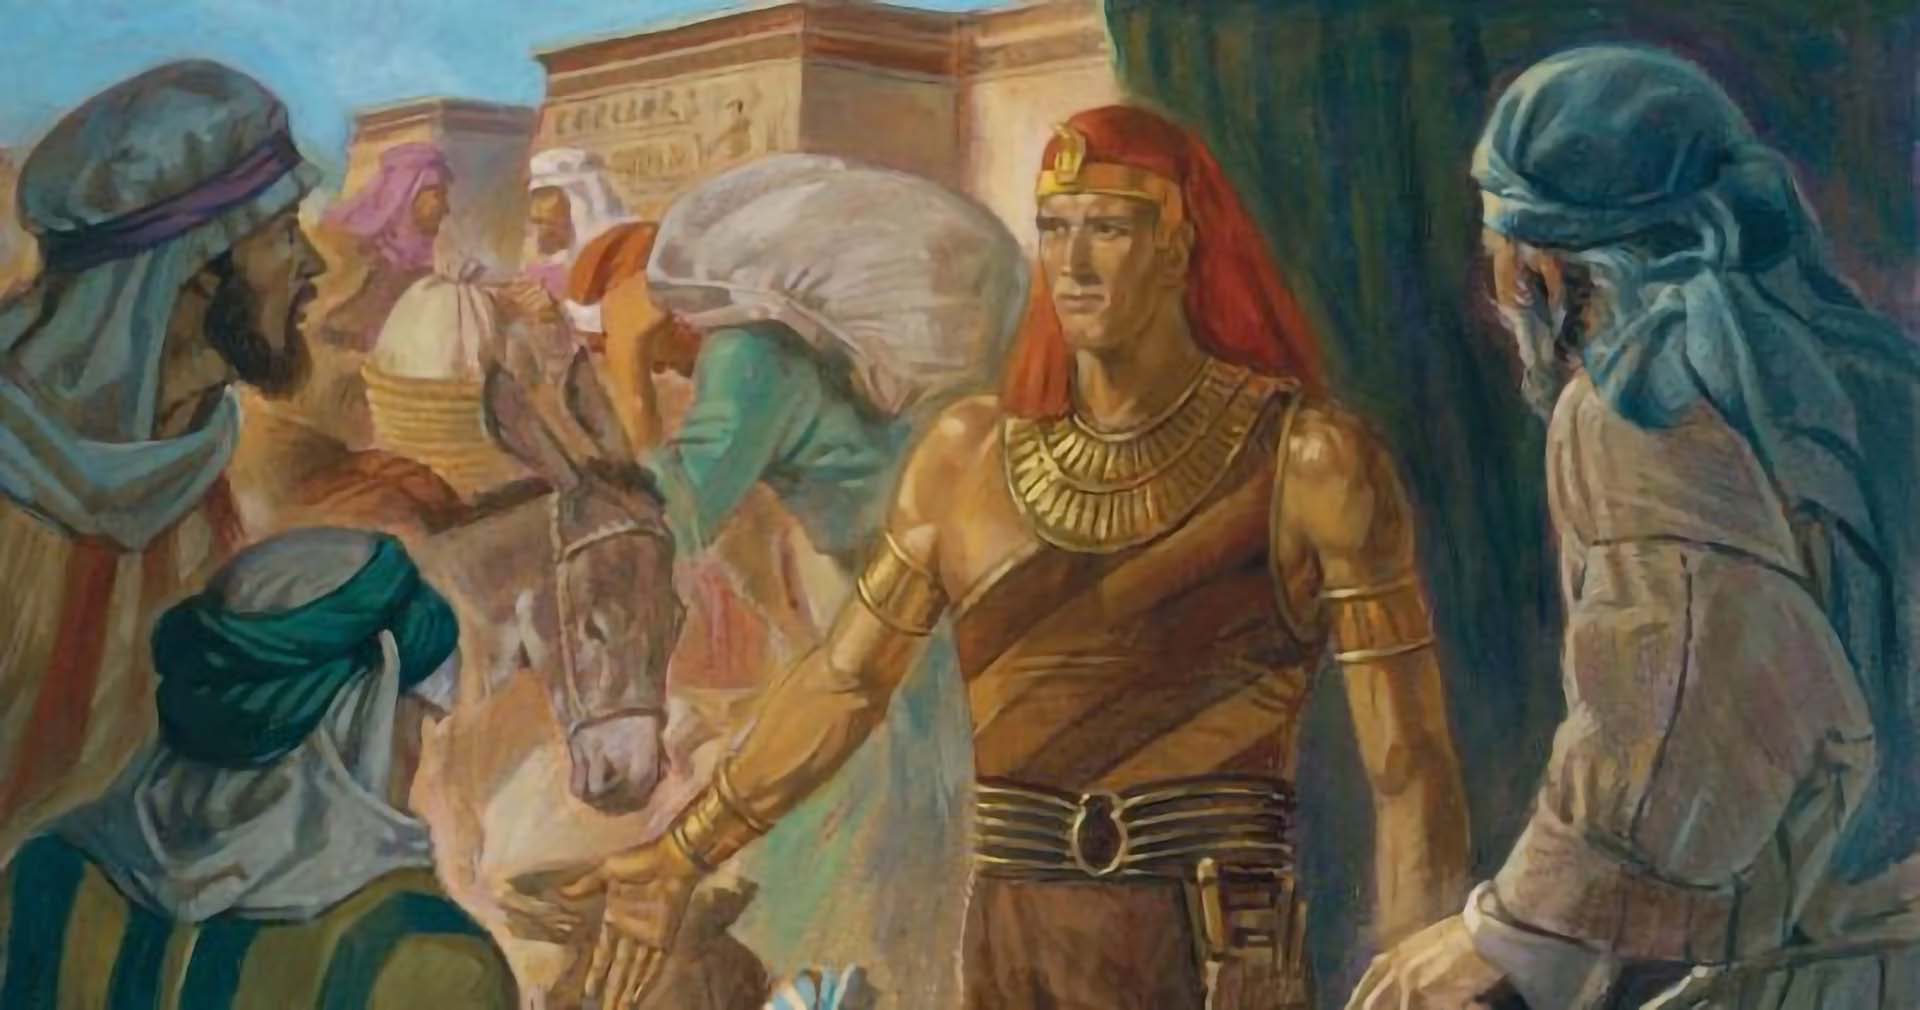 Illustration of Joseph of Egypt, by Robert T. Barrett. Image via Church of Jesus Christ.